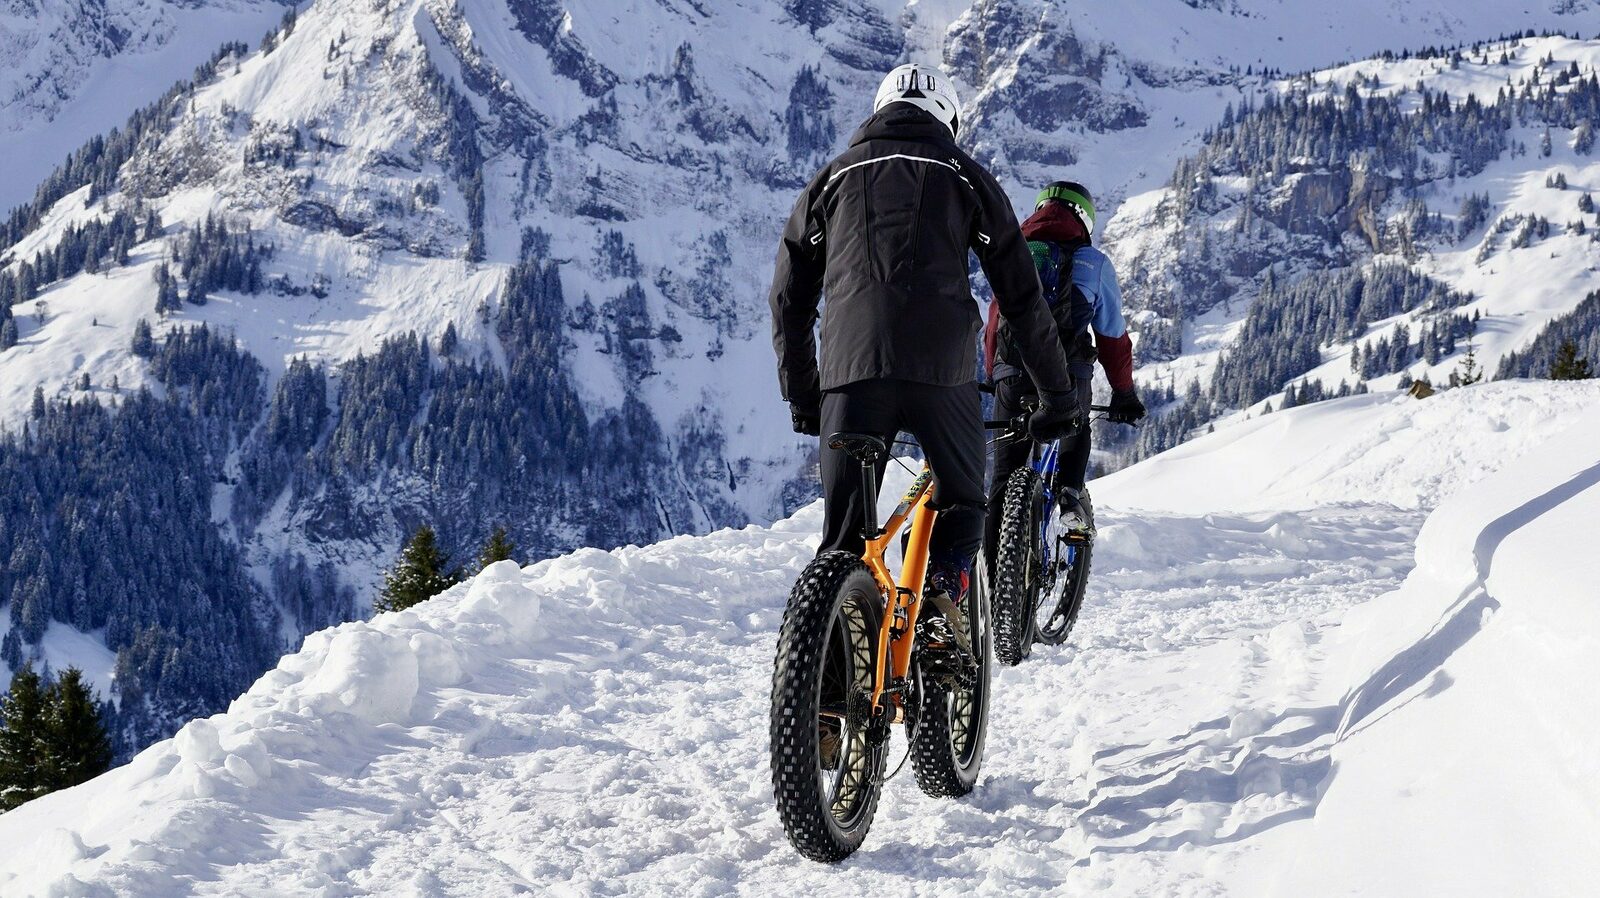 Mountainbiken in de sneeuw